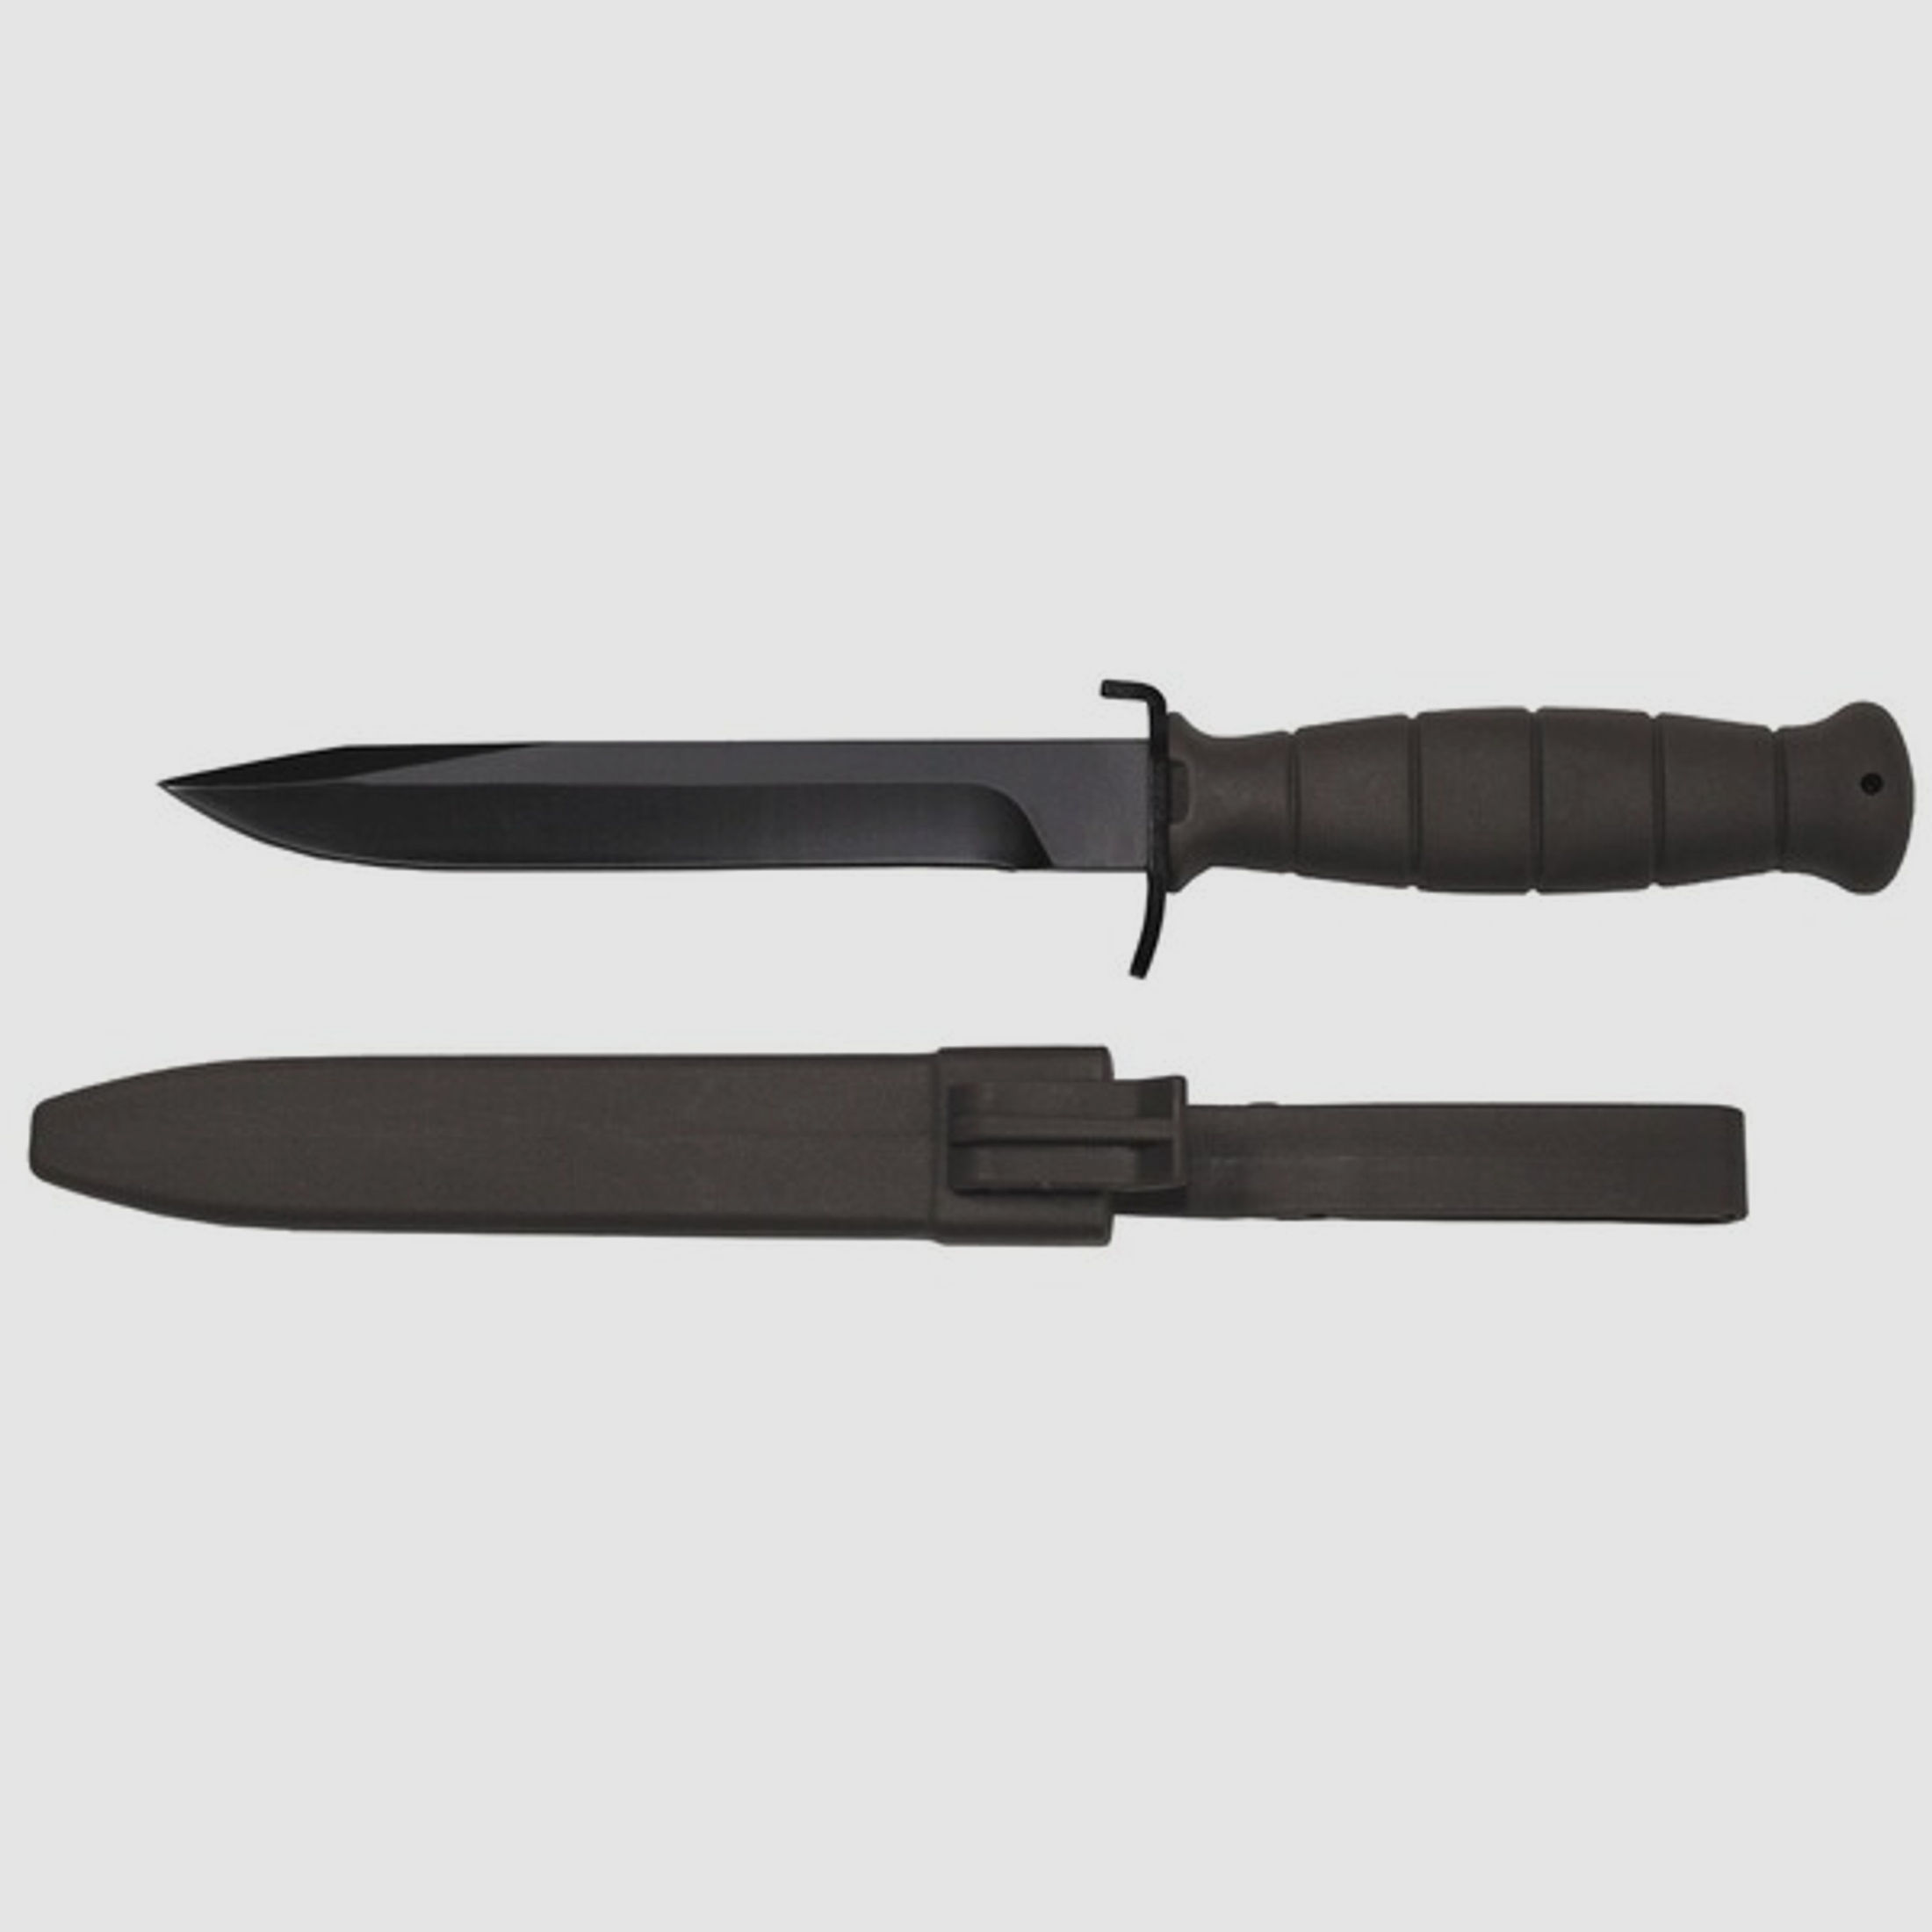 ÖBH Kampfmesser / Feldmesser 16,5/29cm (Nachbau) Schwarz / Oliv mit Kunststoff - Scheide